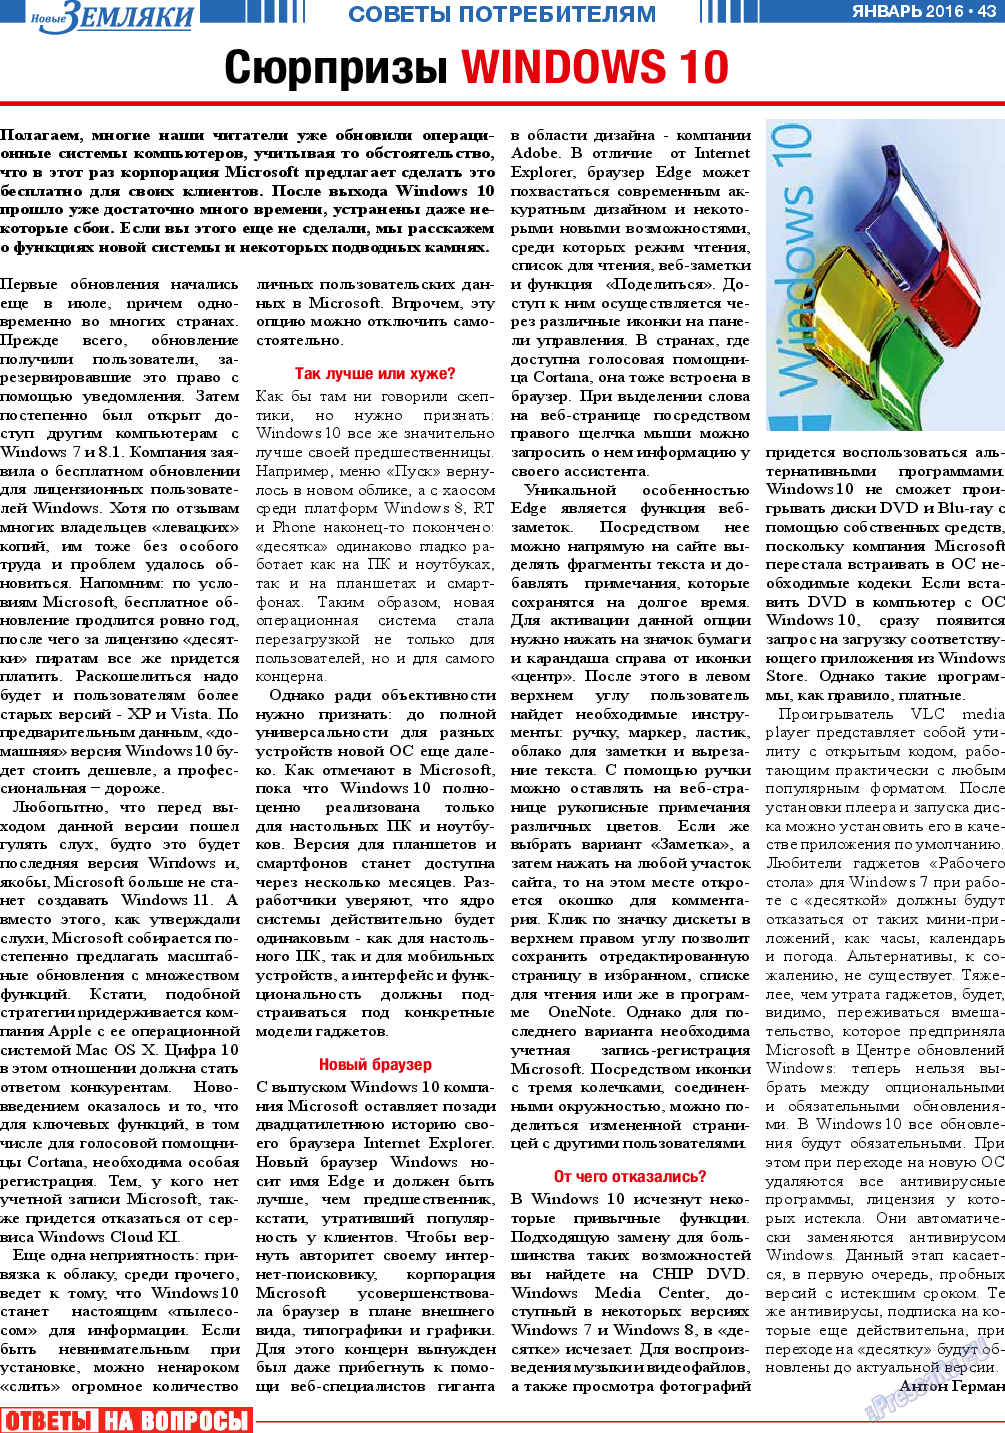 Новые Земляки, газета. 2016 №1 стр.43